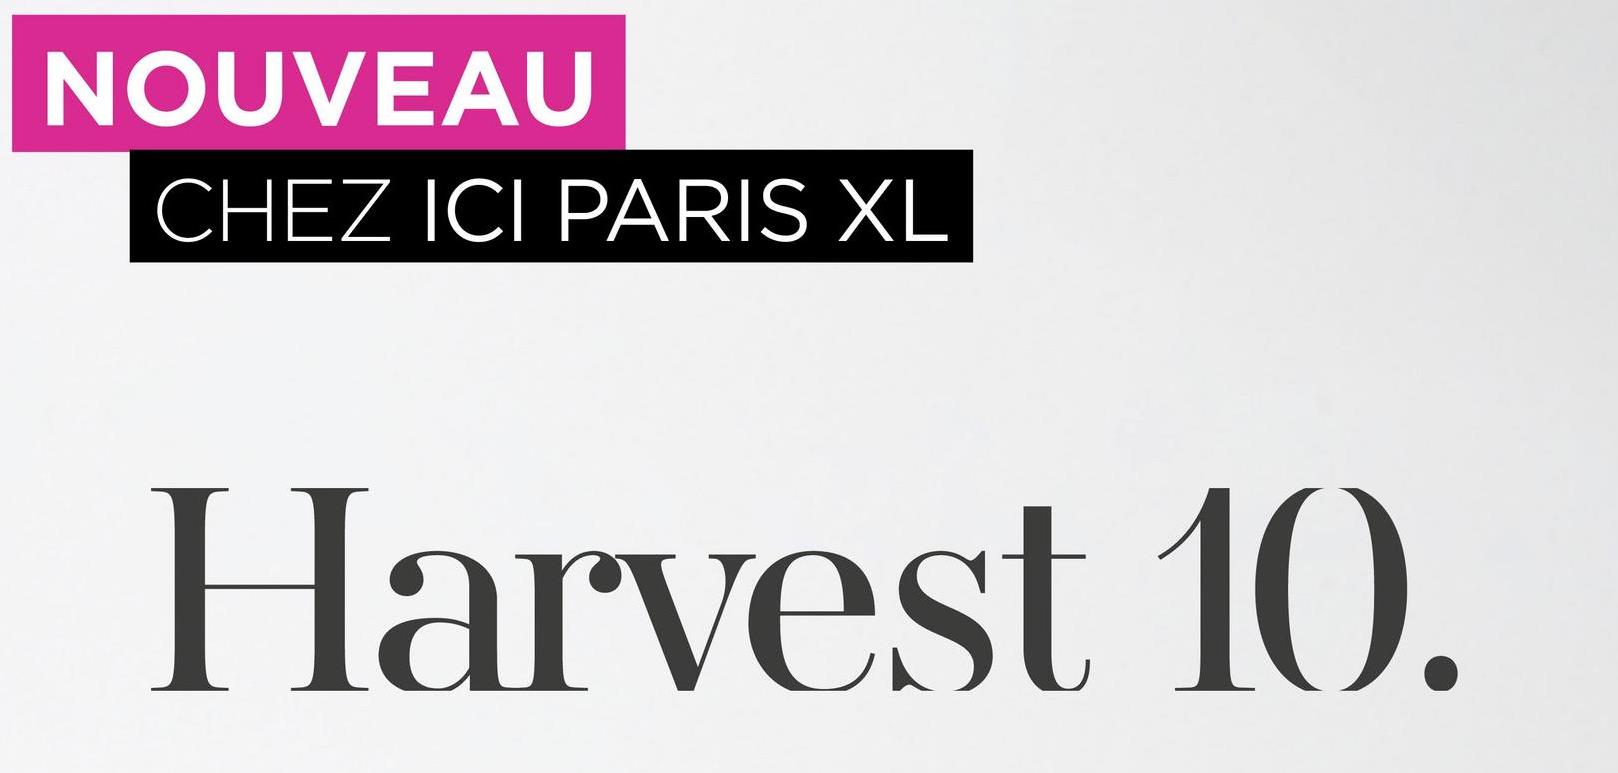 NOUVEAU
CHEZ ICI PARIS XL
Harvest 10.
